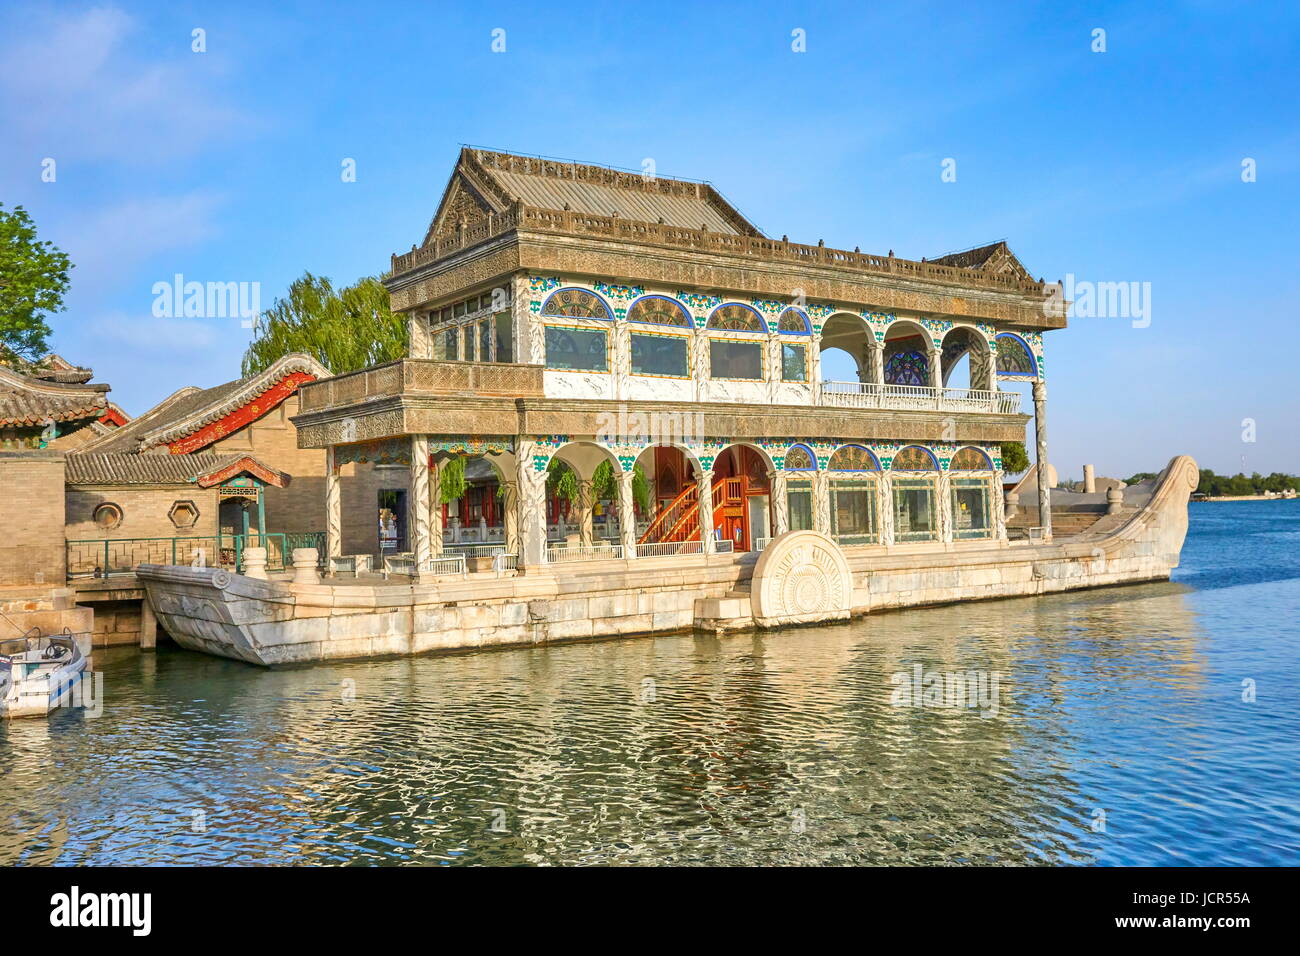 Le bateau de marbre au bord du lac Kunming, Summer Palace, Beijing, Chine Banque D'Images